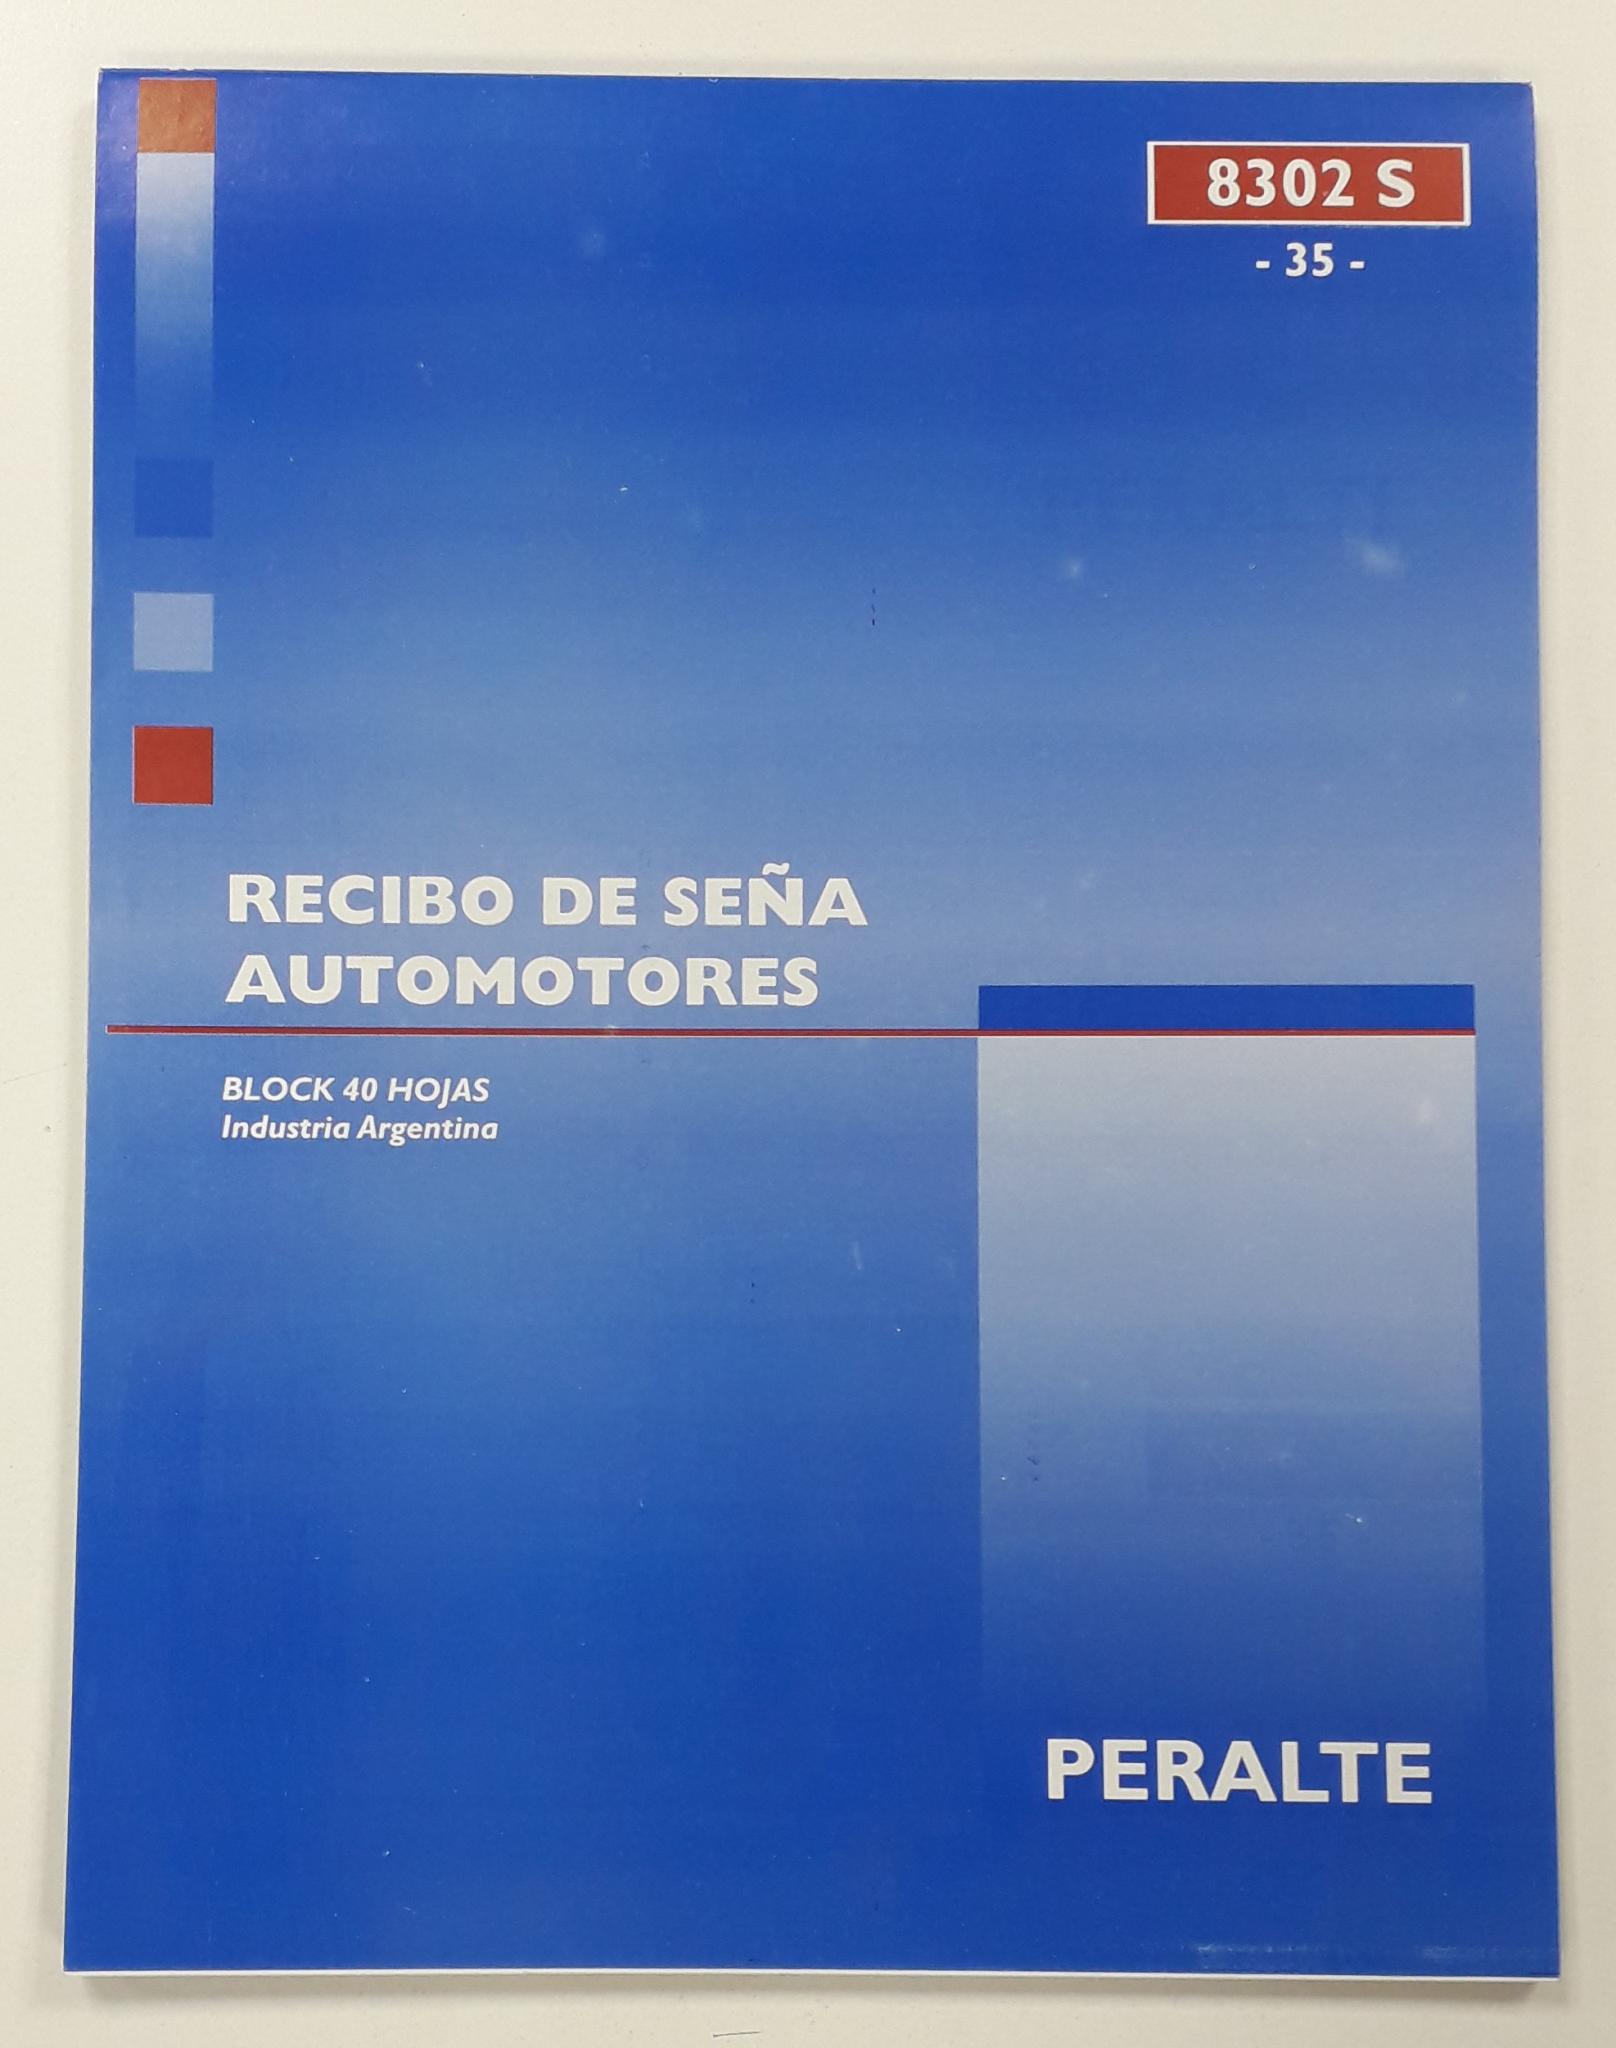 TALONARIO PERALTE RECIBO SEÑA AUTOMOTOR CARTA 8302S(35)